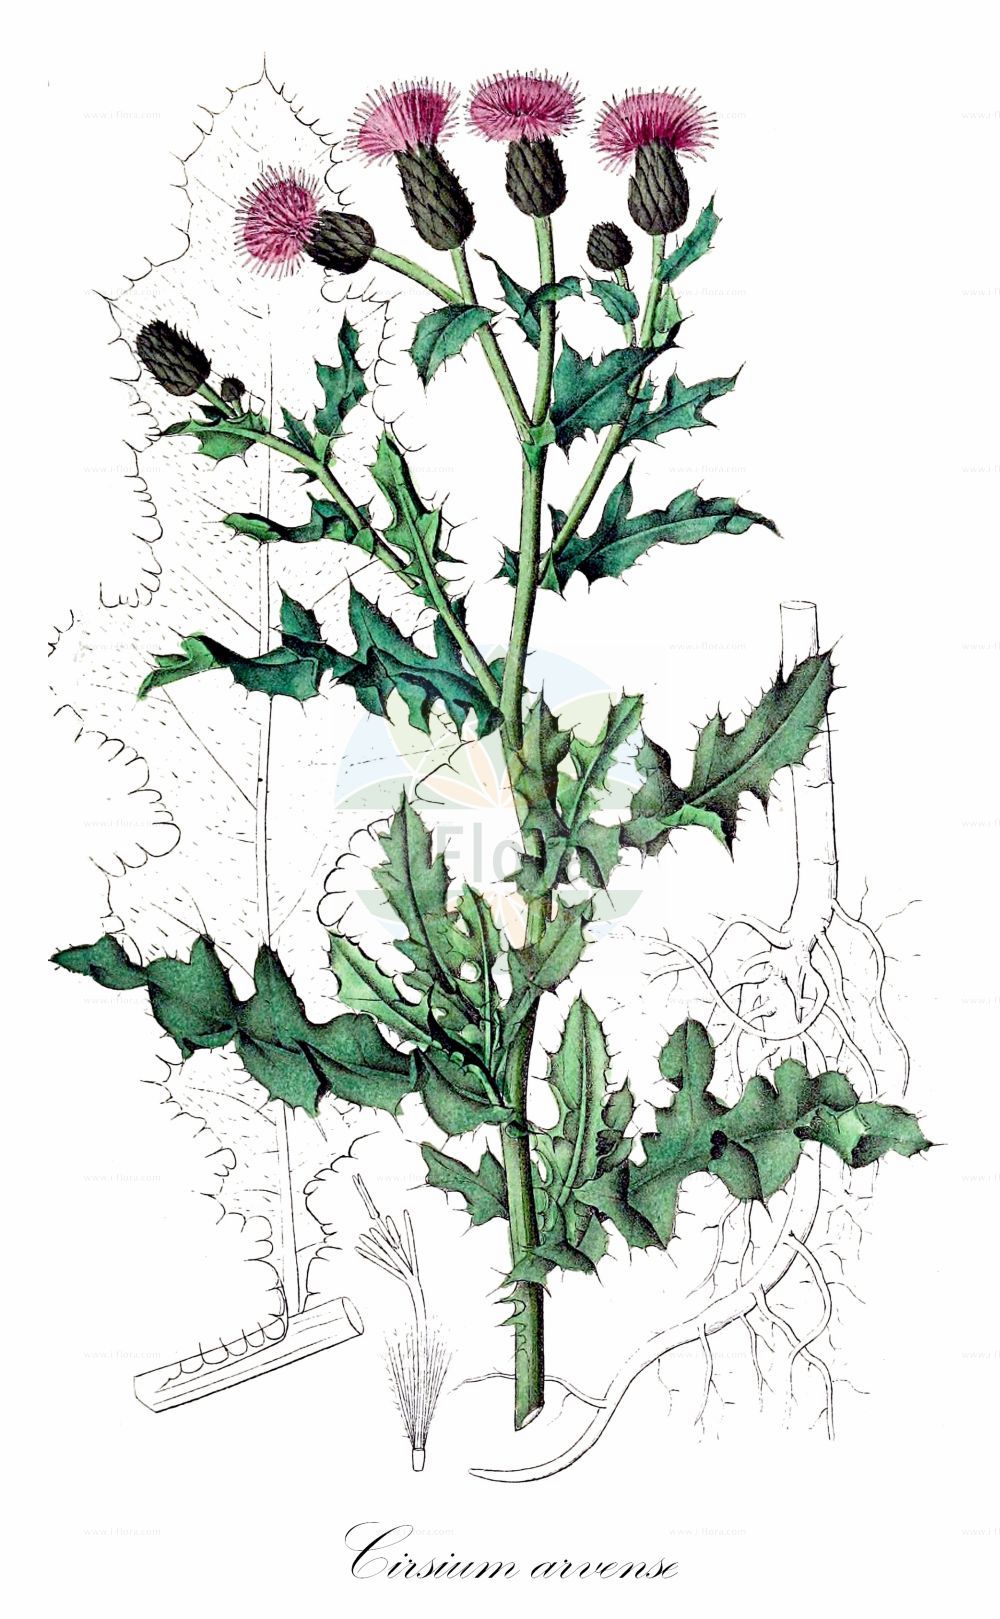 Historische Abbildung von Cirsium arvense (Acker-Kratzdistel - Creeping Thistle). Das Bild zeigt Blatt, Bluete, Frucht und Same. ---- Historical Drawing of Cirsium arvense (Acker-Kratzdistel - Creeping Thistle). The image is showing leaf, flower, fruit and seed.(Cirsium arvense,Acker-Kratzdistel,Creeping Thistle,Cirsium albicans,Cirsium argenteum,Cirsium arvense,Cirsium horridum,Cirsium incanum,Cirsium macrostylum,Cirsium setosum,Cnicus arvensis,Cnicus macrostylus,Serratula arvensis,Serratula incana,Serratula setosa,Acker-Kratzdistel,Creeping Thistle,California Thistle,Canada Thistle,Corn Thistle,Cursed Thistle,Green Thistle,Hard Thistle,Perennial Thistle,Prickly Thistle,Way Thistle,Small-flowered Thistle,Cirsium,Kratzdistel,Thistle,Asteraceae,Korbblütengewächse,Daisy family,Blatt,Bluete,Frucht,Same,leaf,flower,fruit,seed,Dietrich (1833-1844))